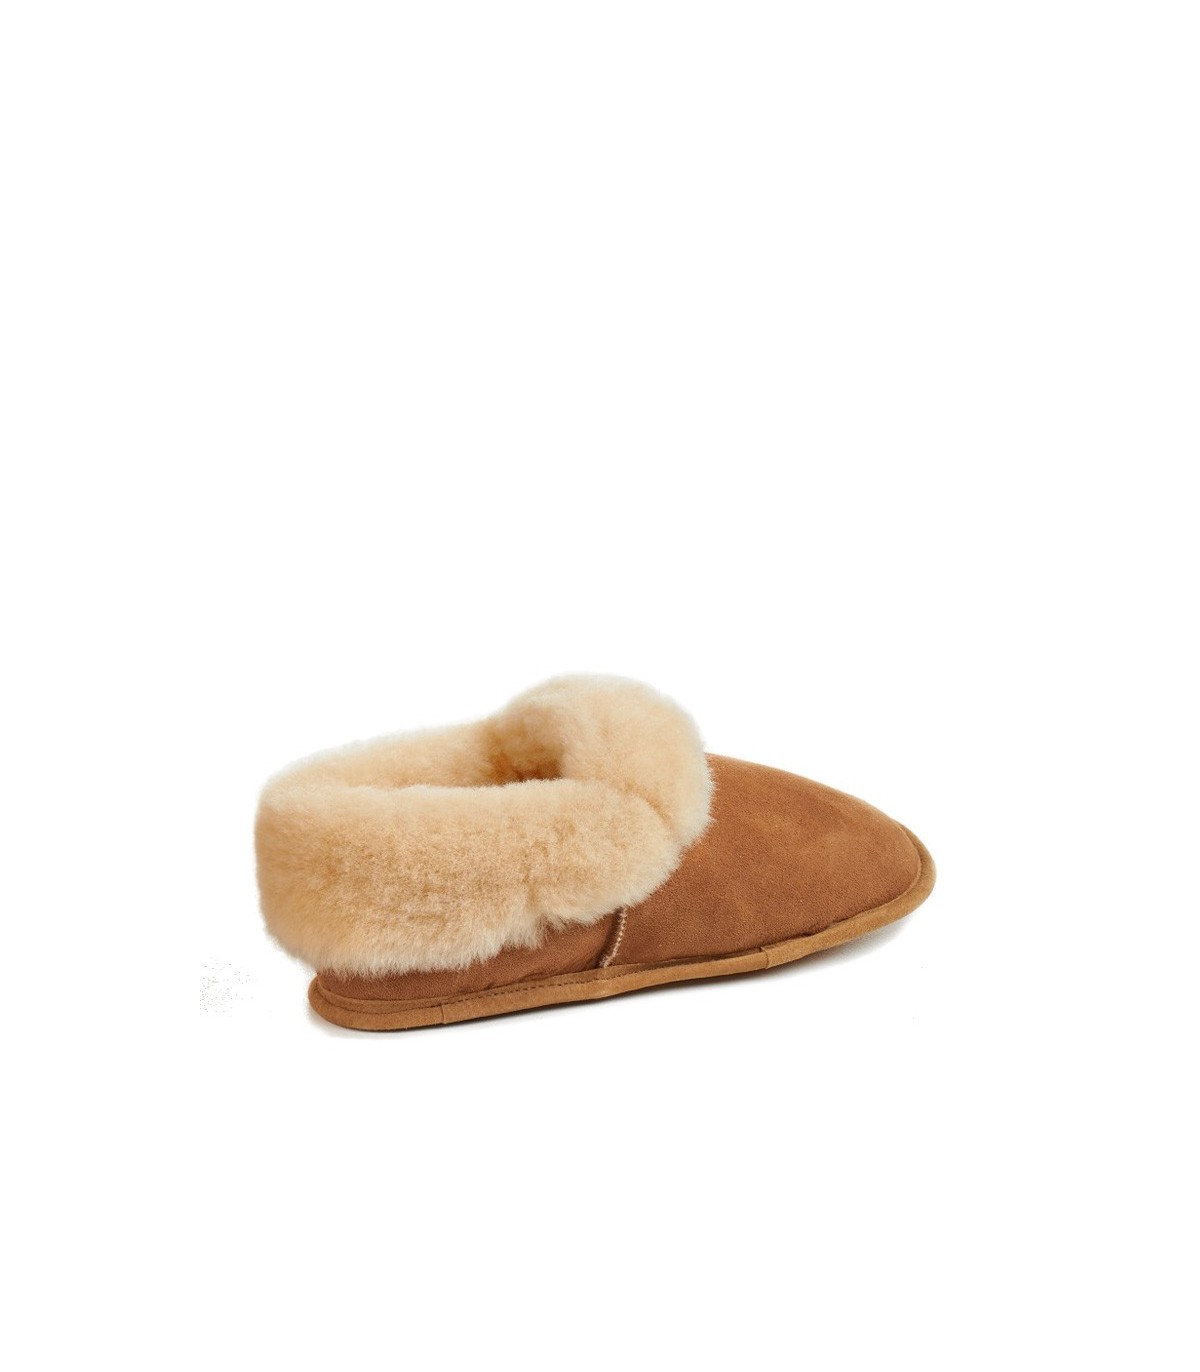 Men's Australian Sheepskin Slippers Soft Leather Sole Size 8 9 10 11 12 13 14 